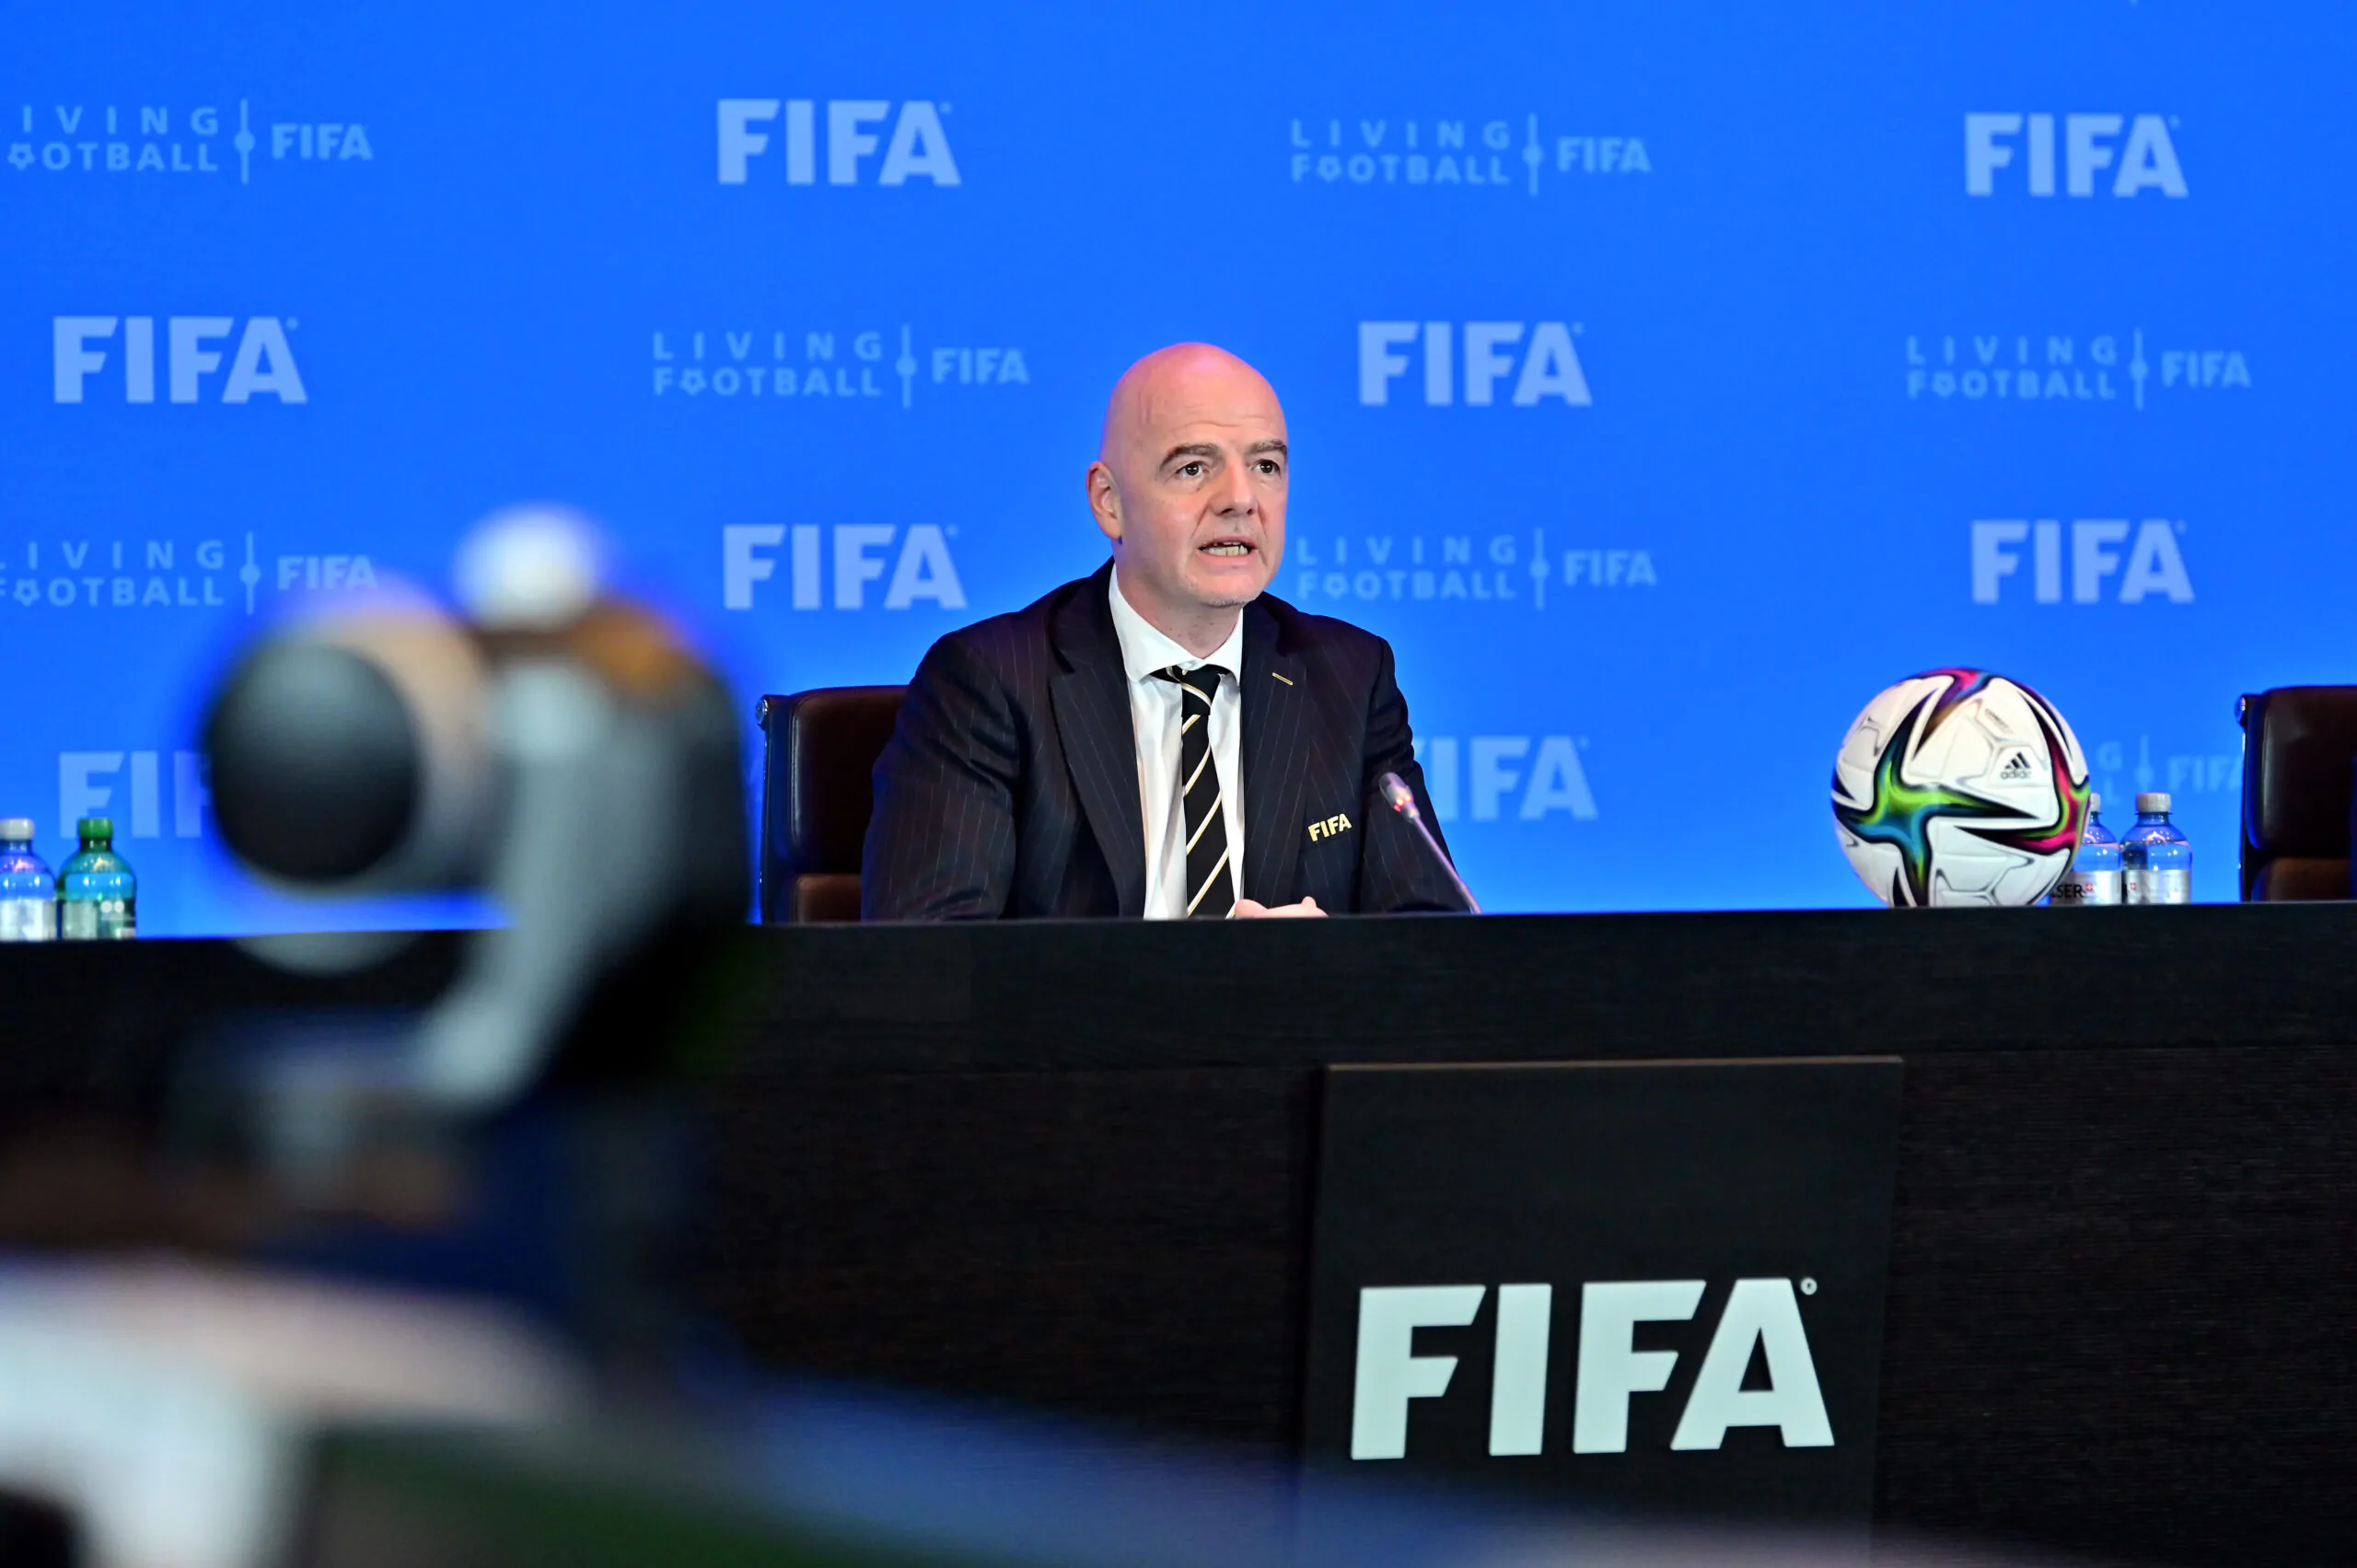 Novità dalla FIFA: può essere introdotta una nuova regola sul tempo di gioco